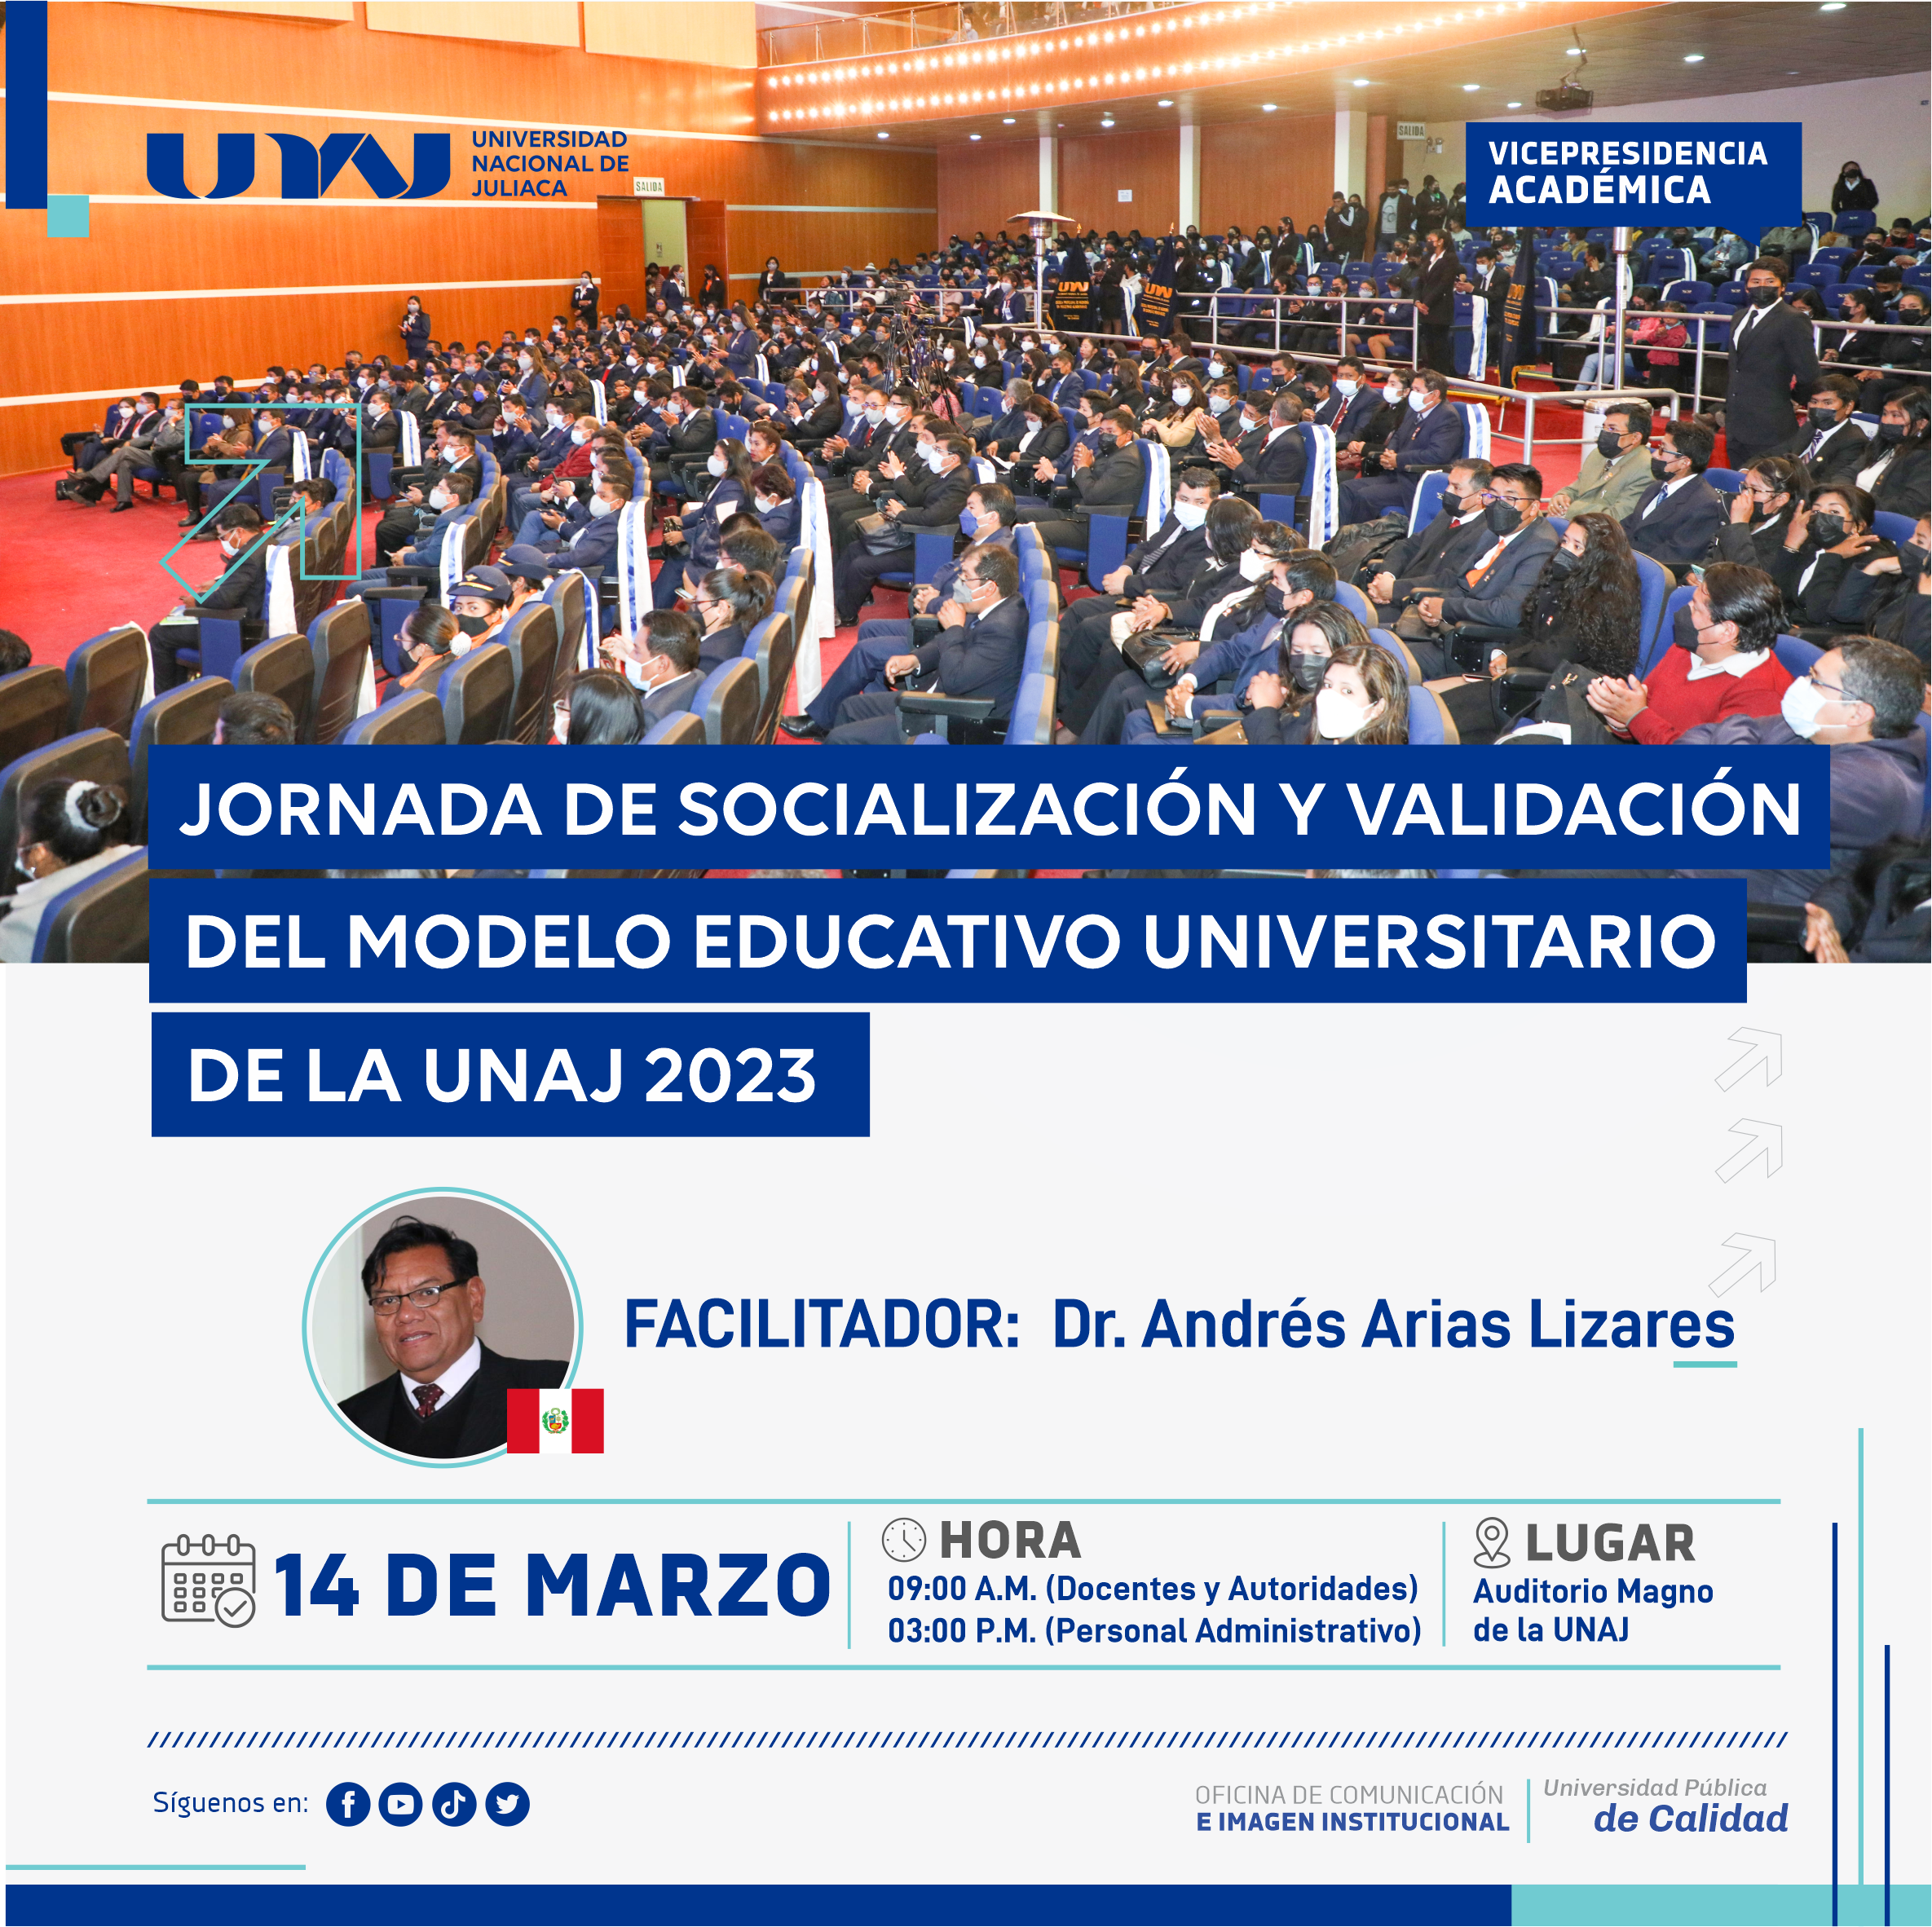 JORNADA DE SOCIALIZACIÓN Y VALIDACIÓN DEL MODELO EDUCATIVO UNIVERSITARIO DE LA UNAJ 2023